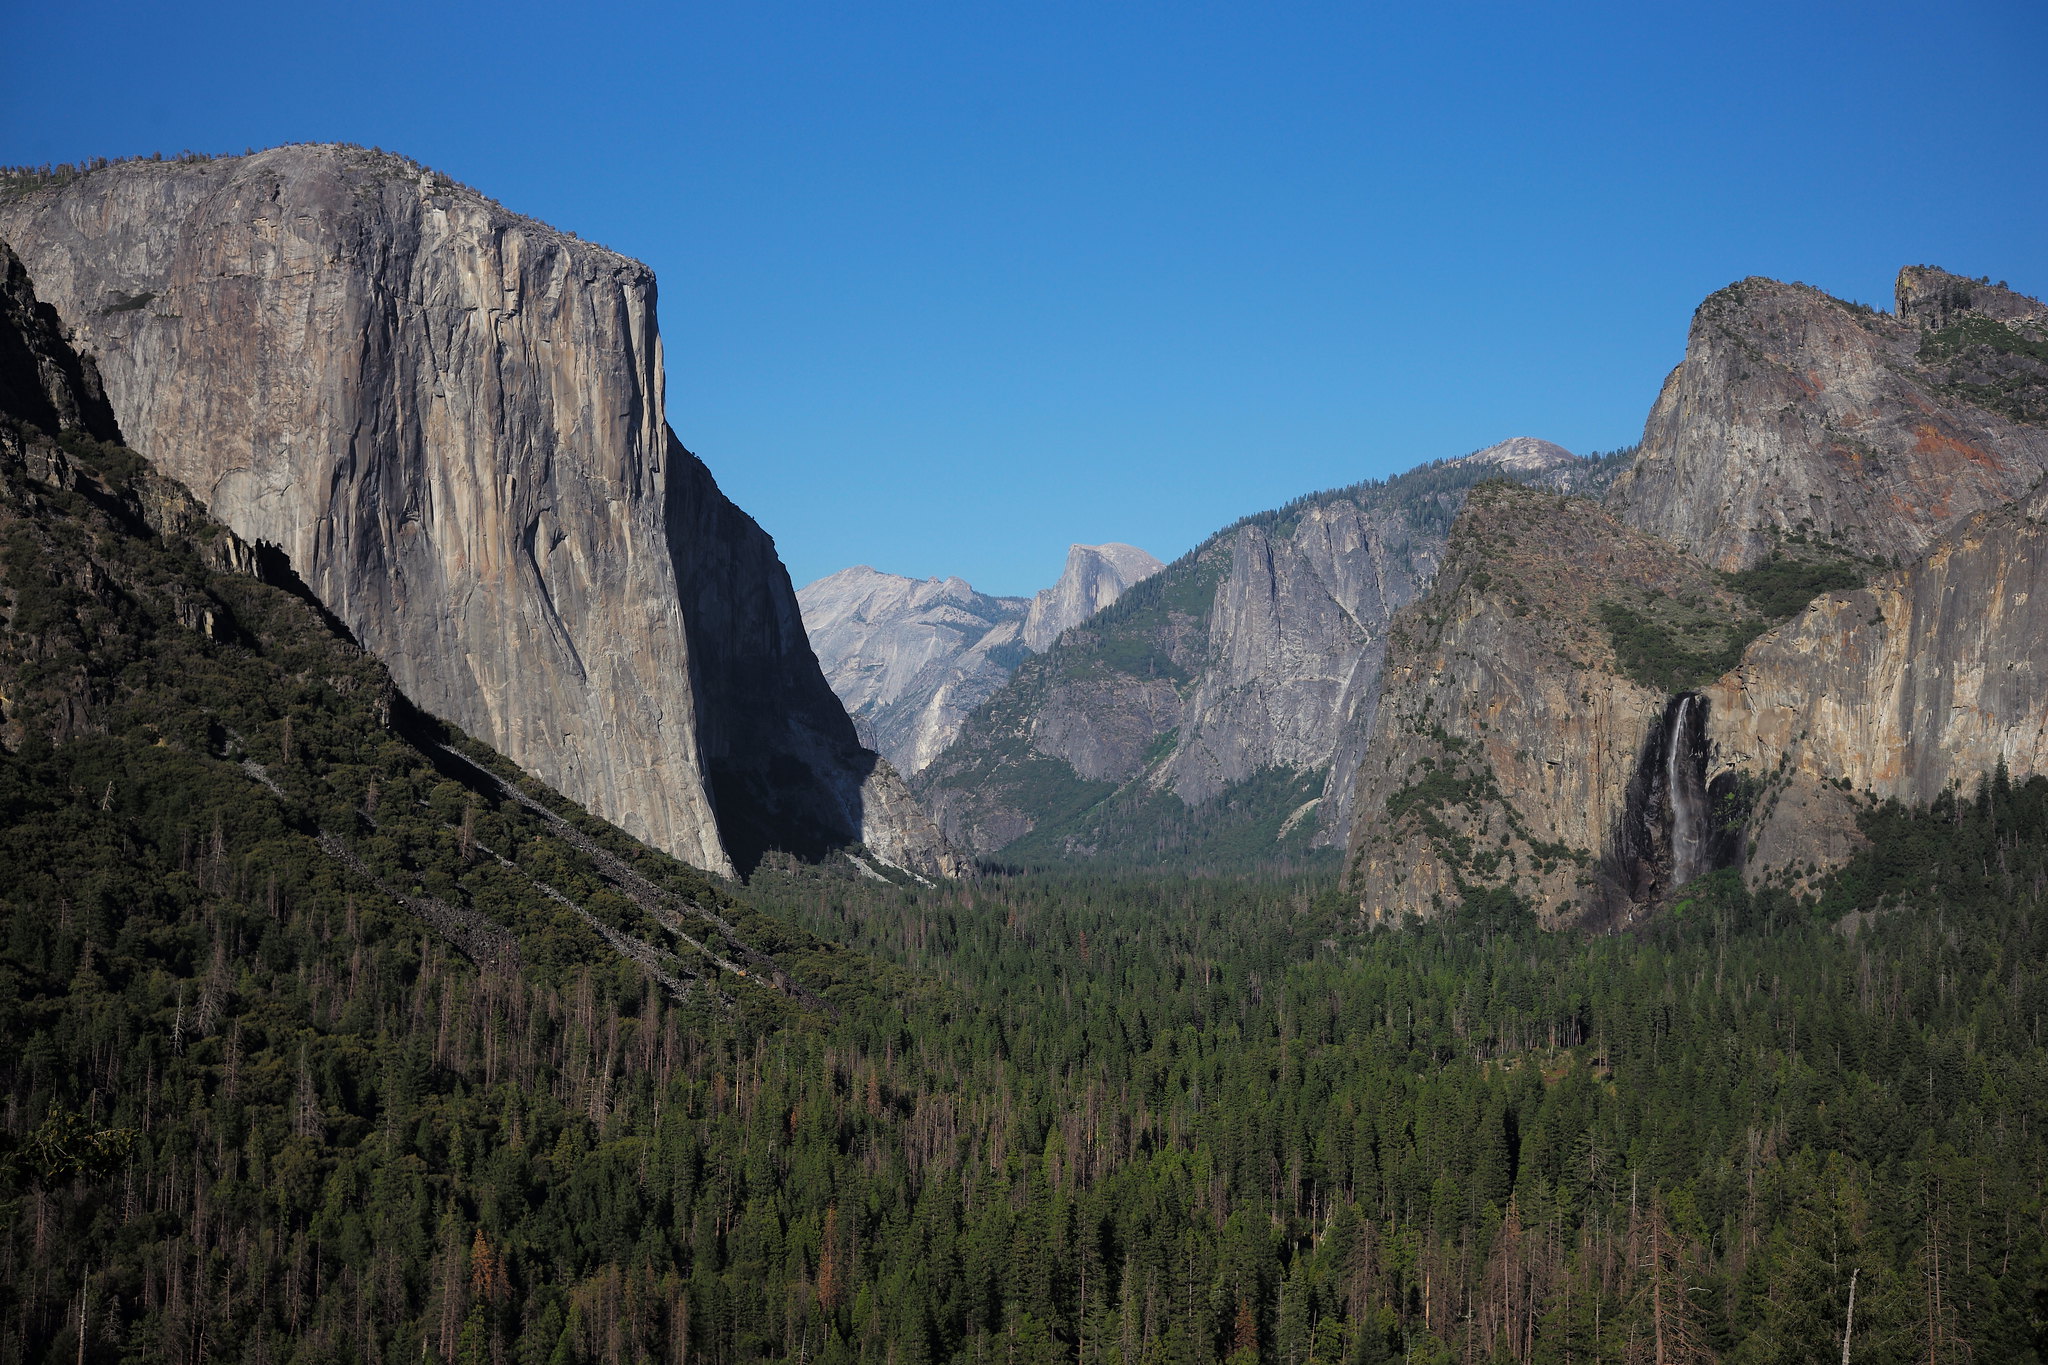 El Capitan - Yosemite National Park